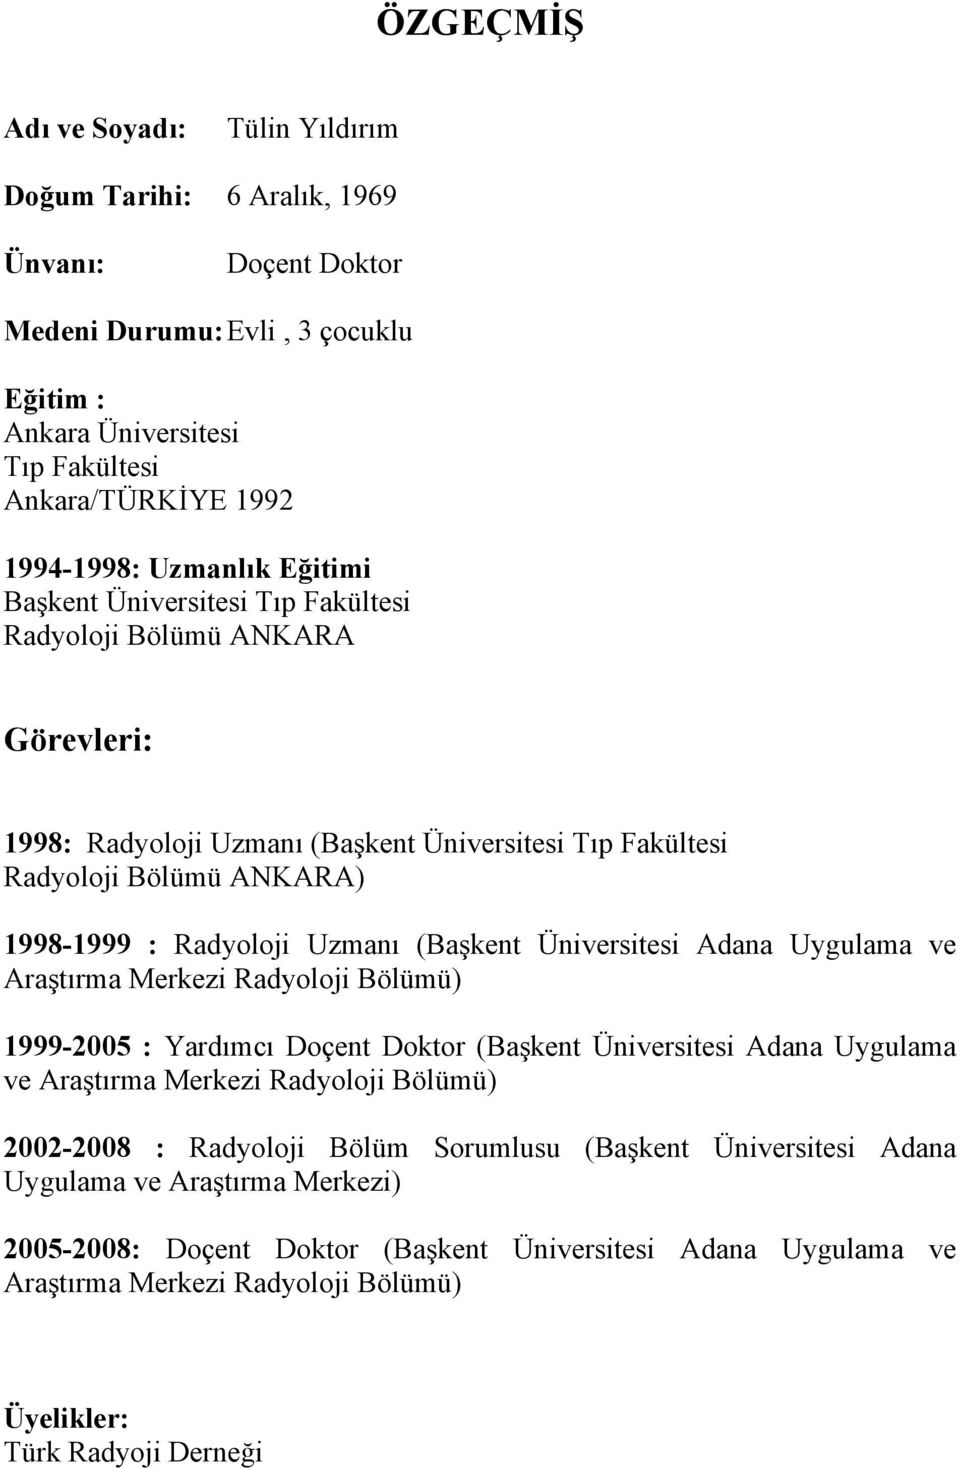 (Başkent Üniversitesi Adana Uygulama ve Araştırma Merkezi Radyoloji Bölümü) 1999-2005 : Yardımcı Doçent Doktor (Başkent Üniversitesi Adana Uygulama ve Araştırma Merkezi Radyoloji Bölümü) 2002-2008 :